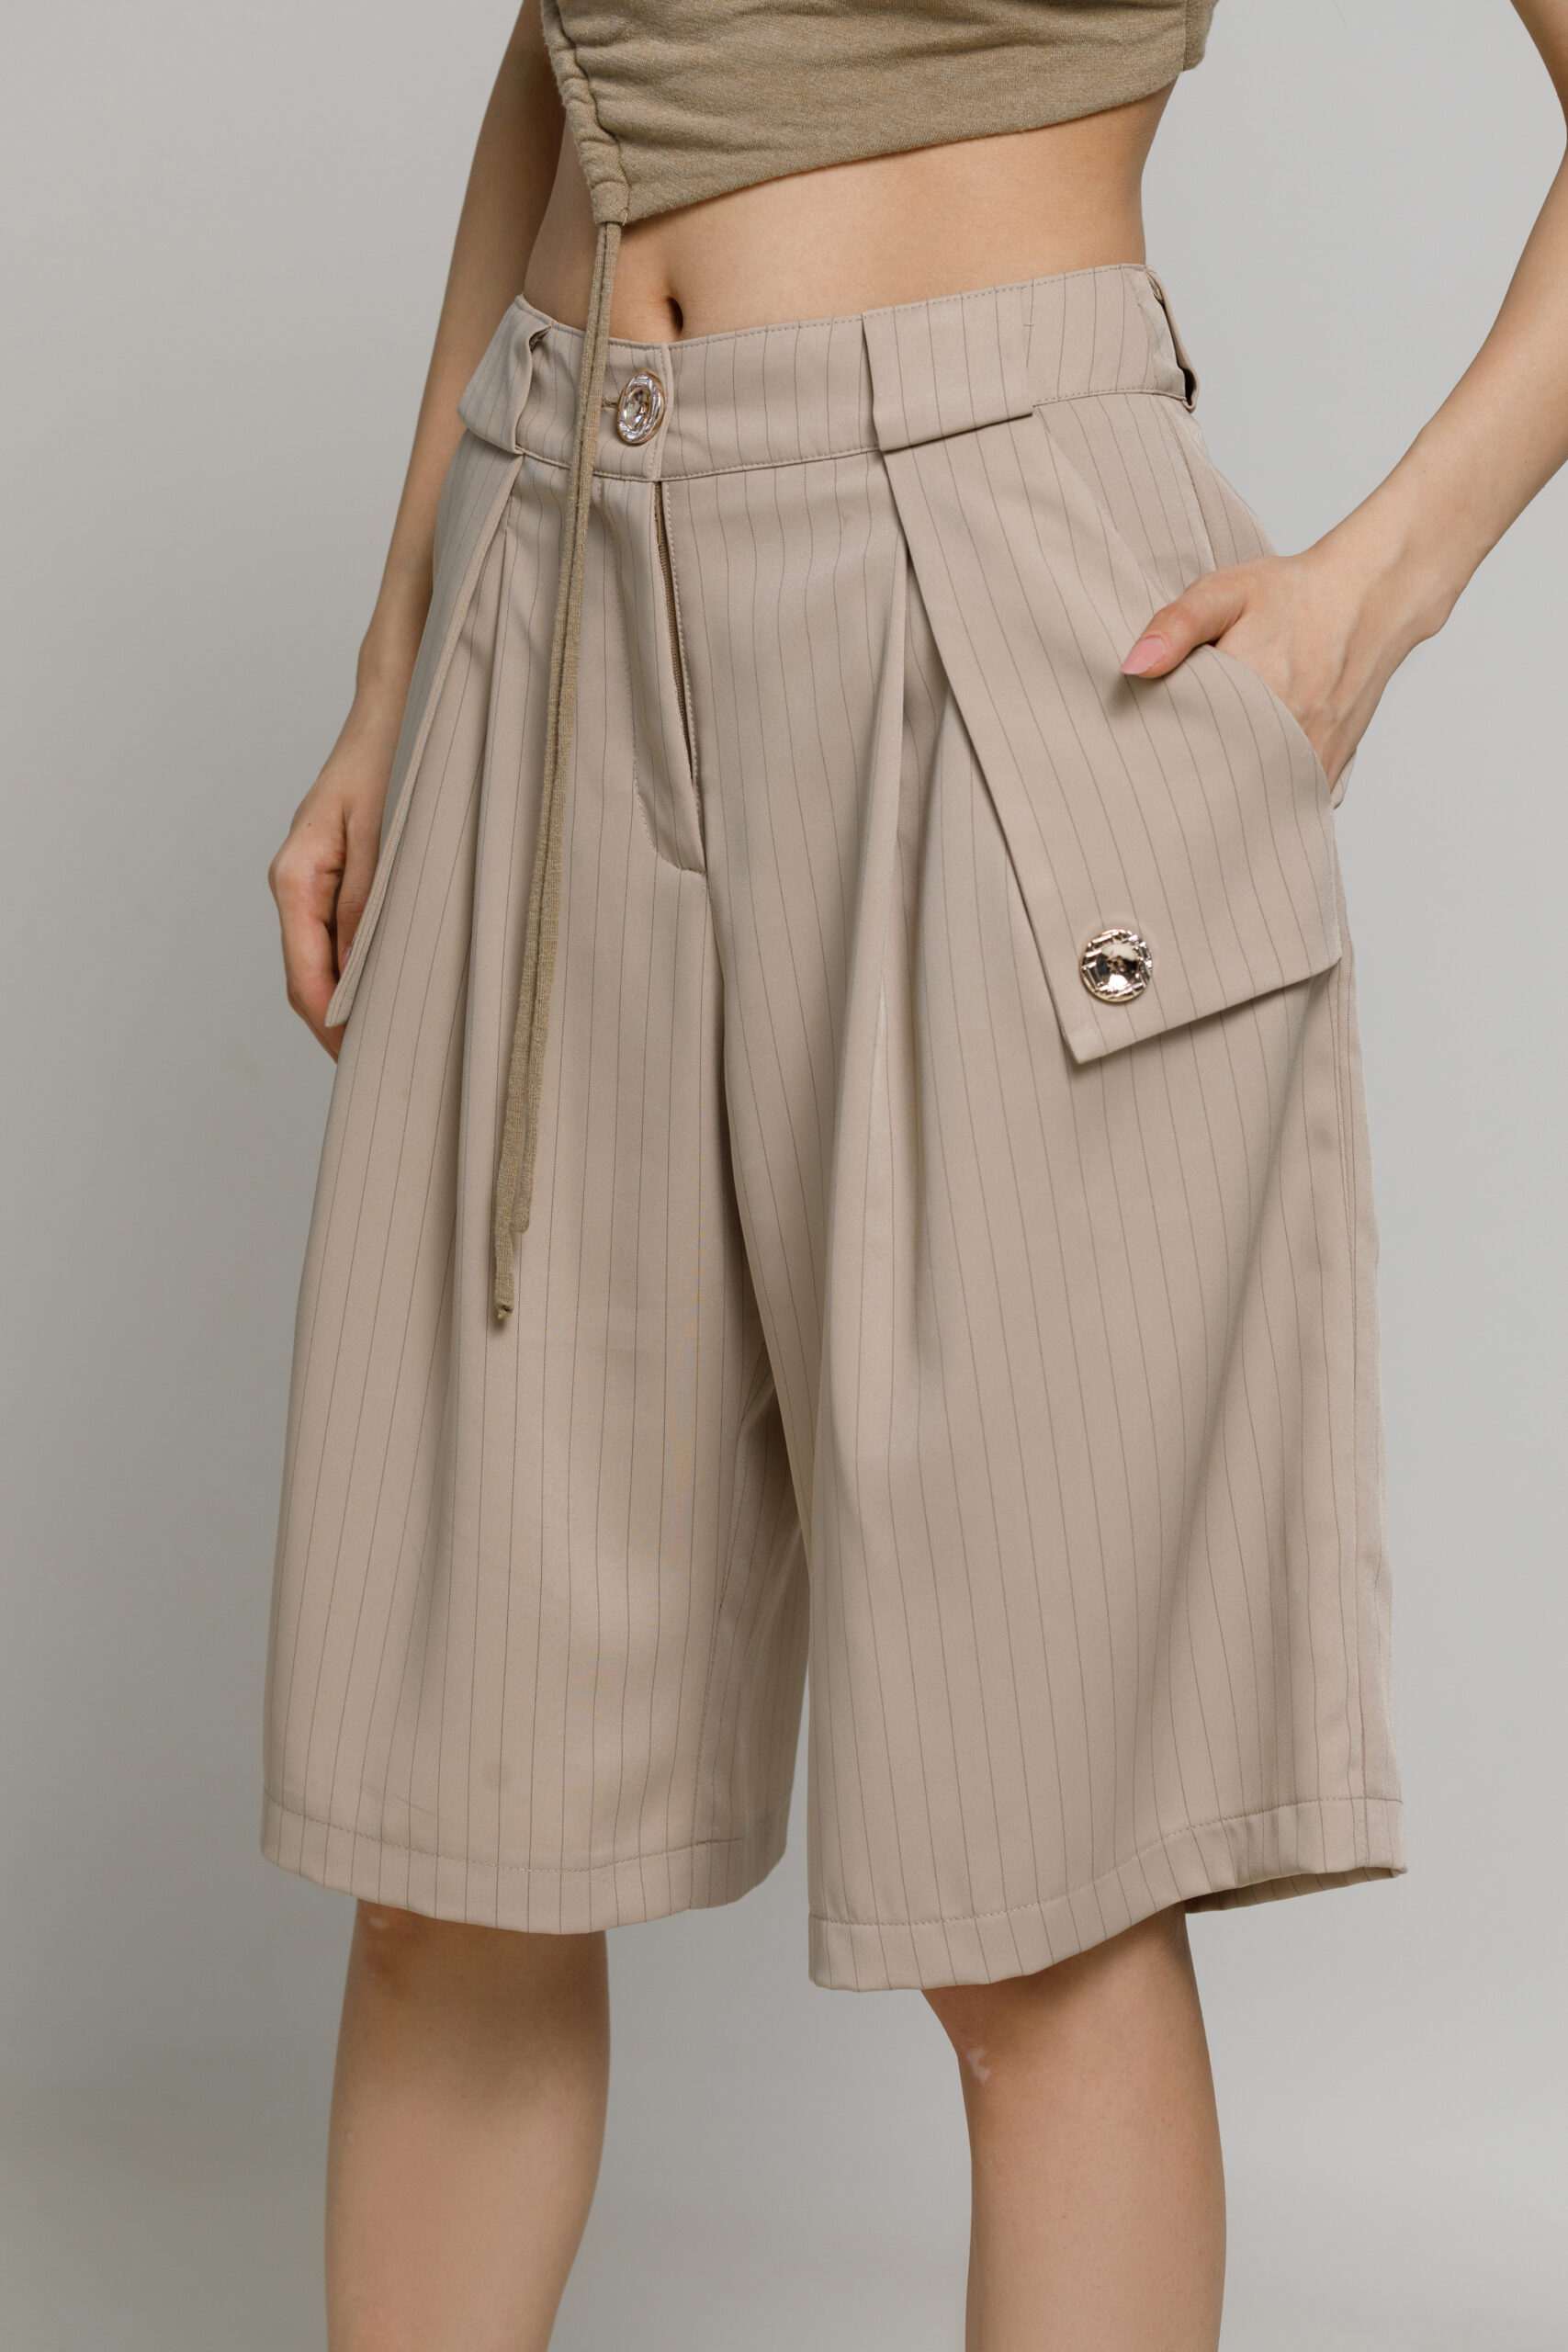 Pantalon ORAN bej scurt. Materiale naturale, design unicat, cu broderie si aplicatii handmade